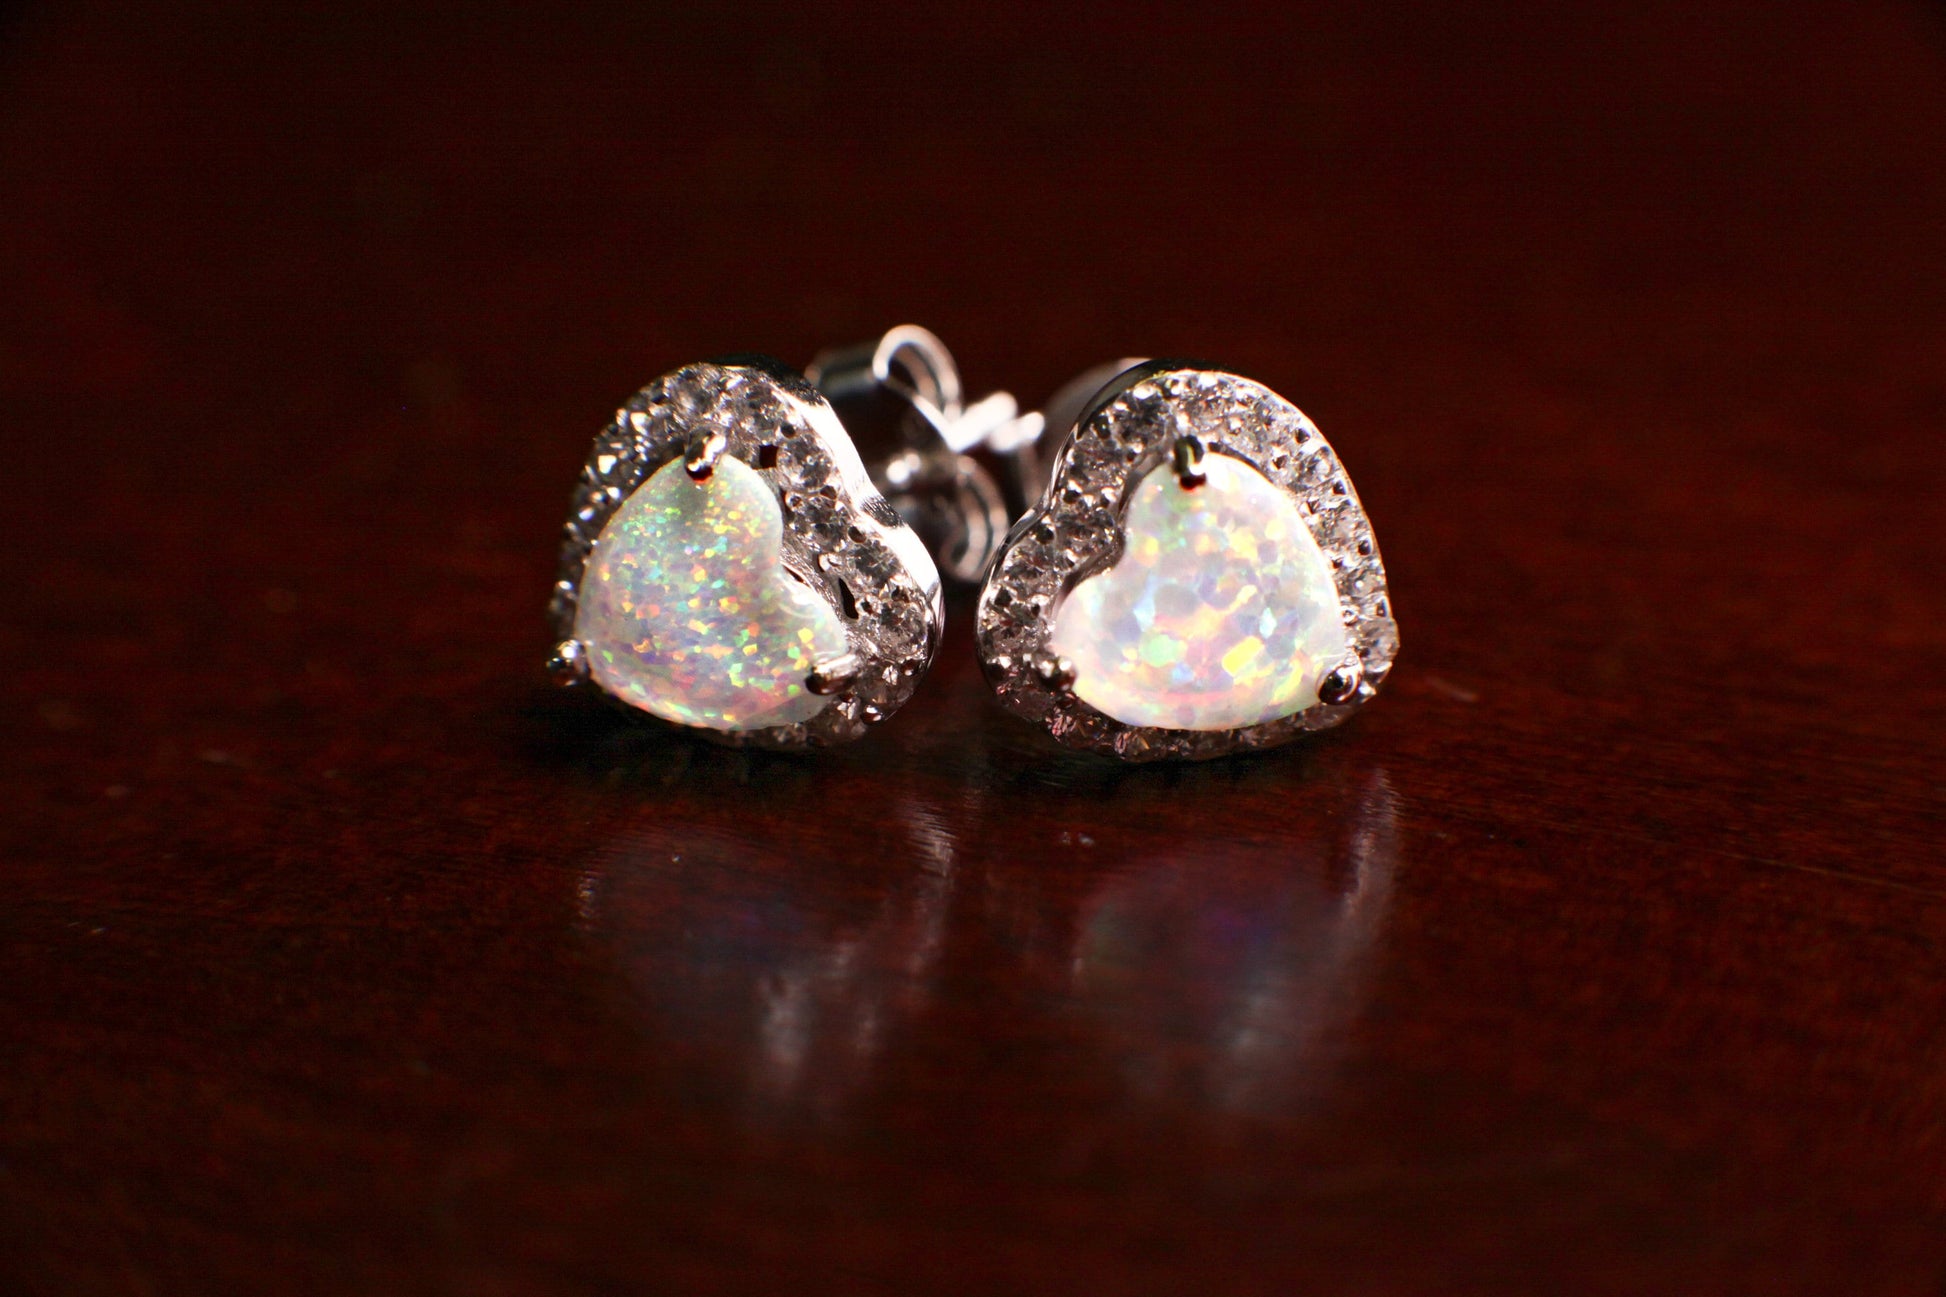 Ethiopian Fire Opal, Welo Opal, 8.5mm Heart Shape Stud Earrings in 925 Sterling Silver AAA Fiery Opal Elegant Dainty Earring valentines gift